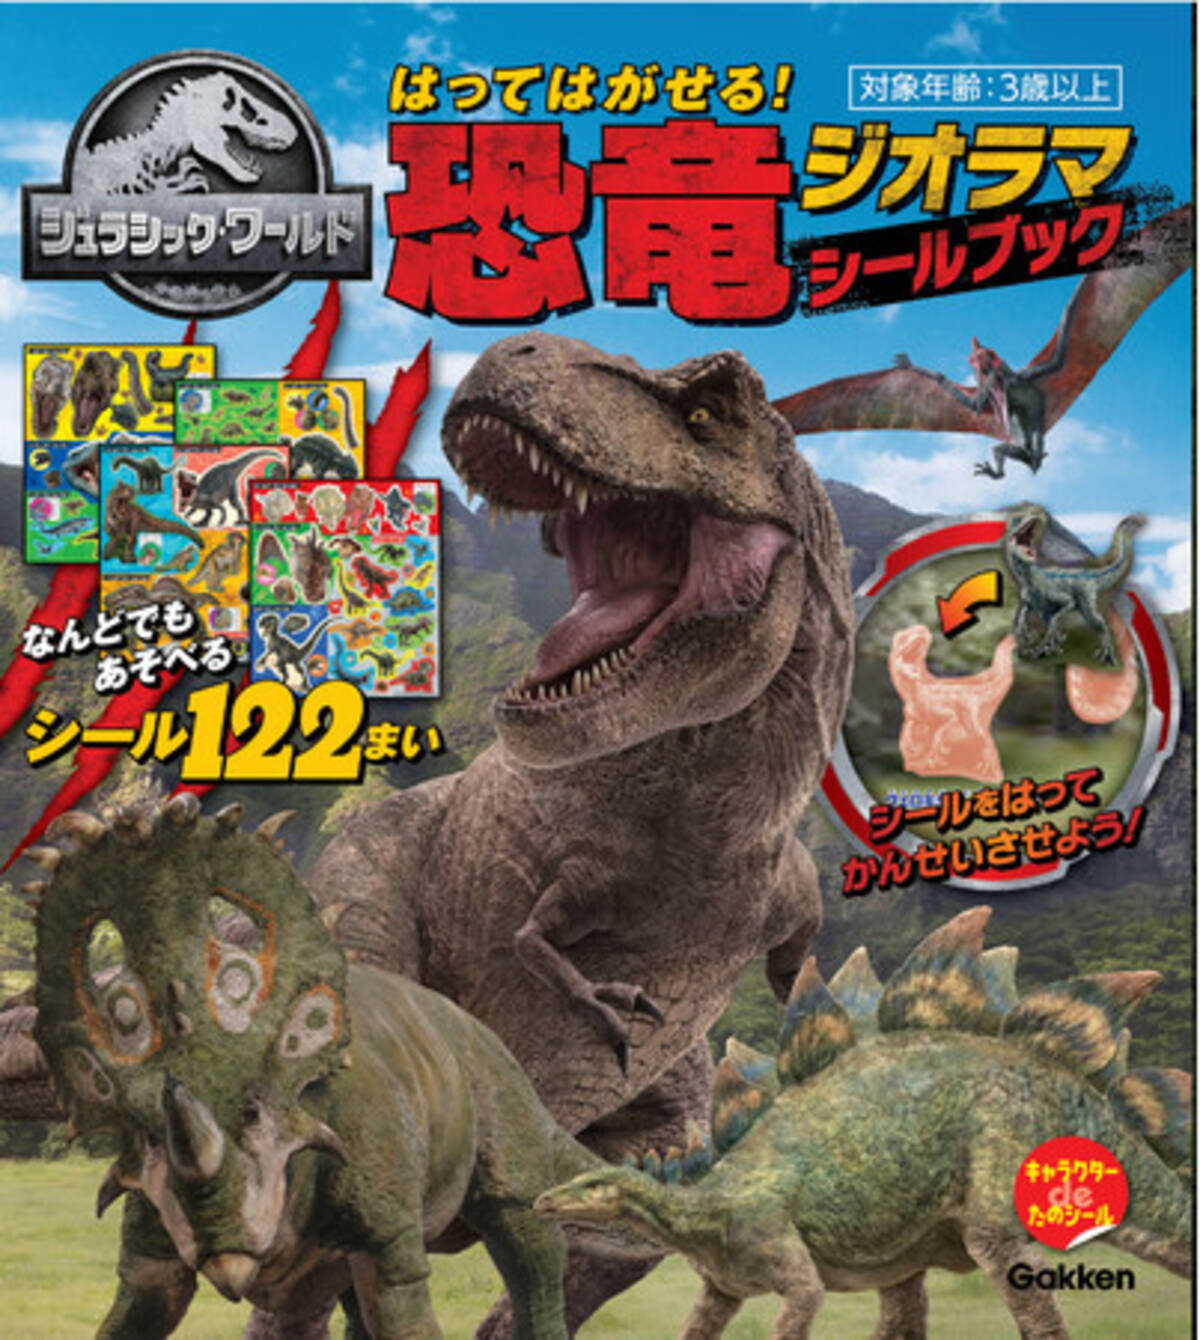 迫力満点の恐竜のシールが１２２枚 はってはがせて何度も遊べる 大人気映画 ジュラシック ワールド のシールブックが登場 21年4月15日 エキサイトニュース